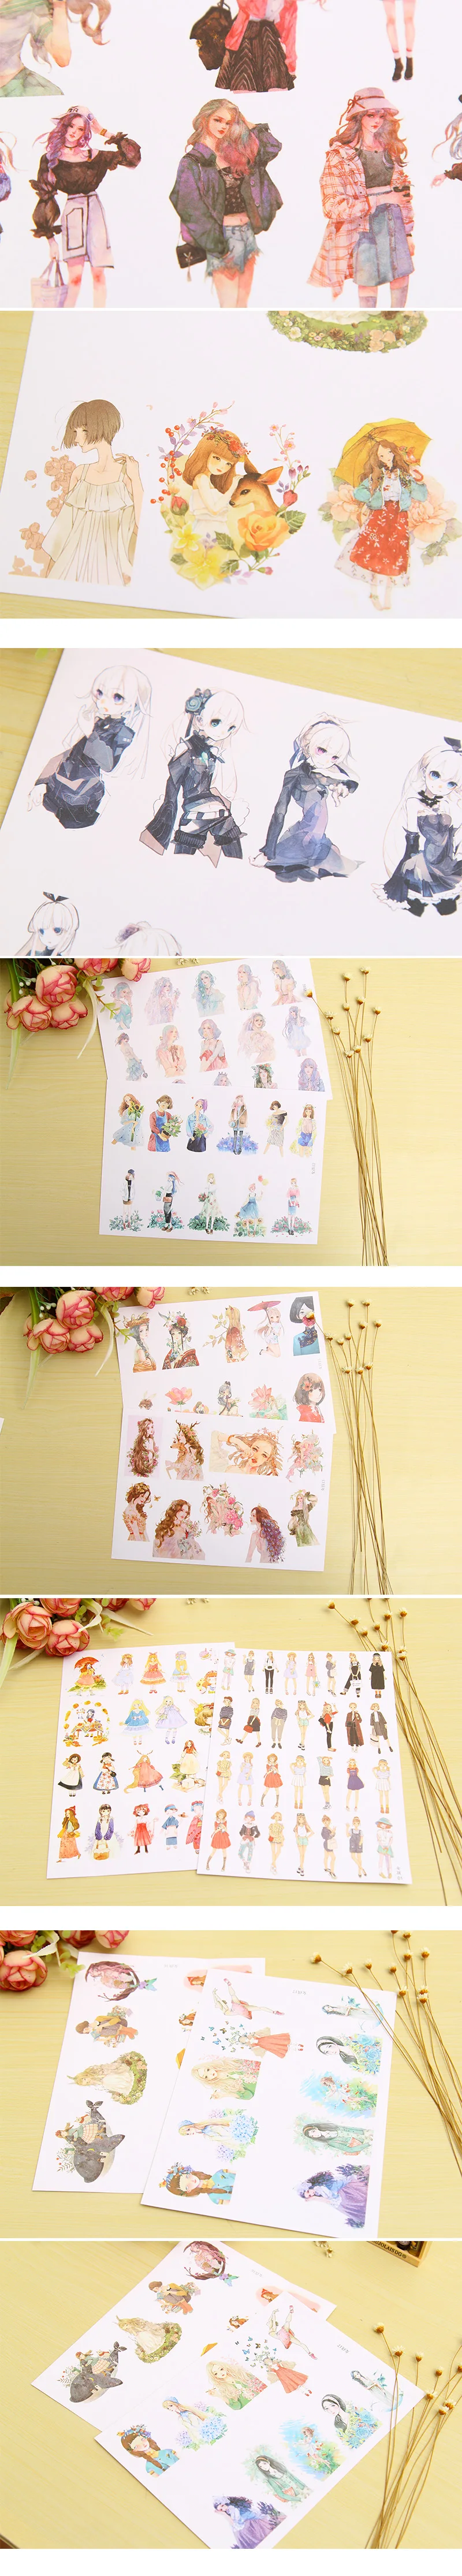 A5 мультфильм молодая девушка бумажная наклейка для творчества декоративная наклейка-стикер для дневника для планировщик альбом